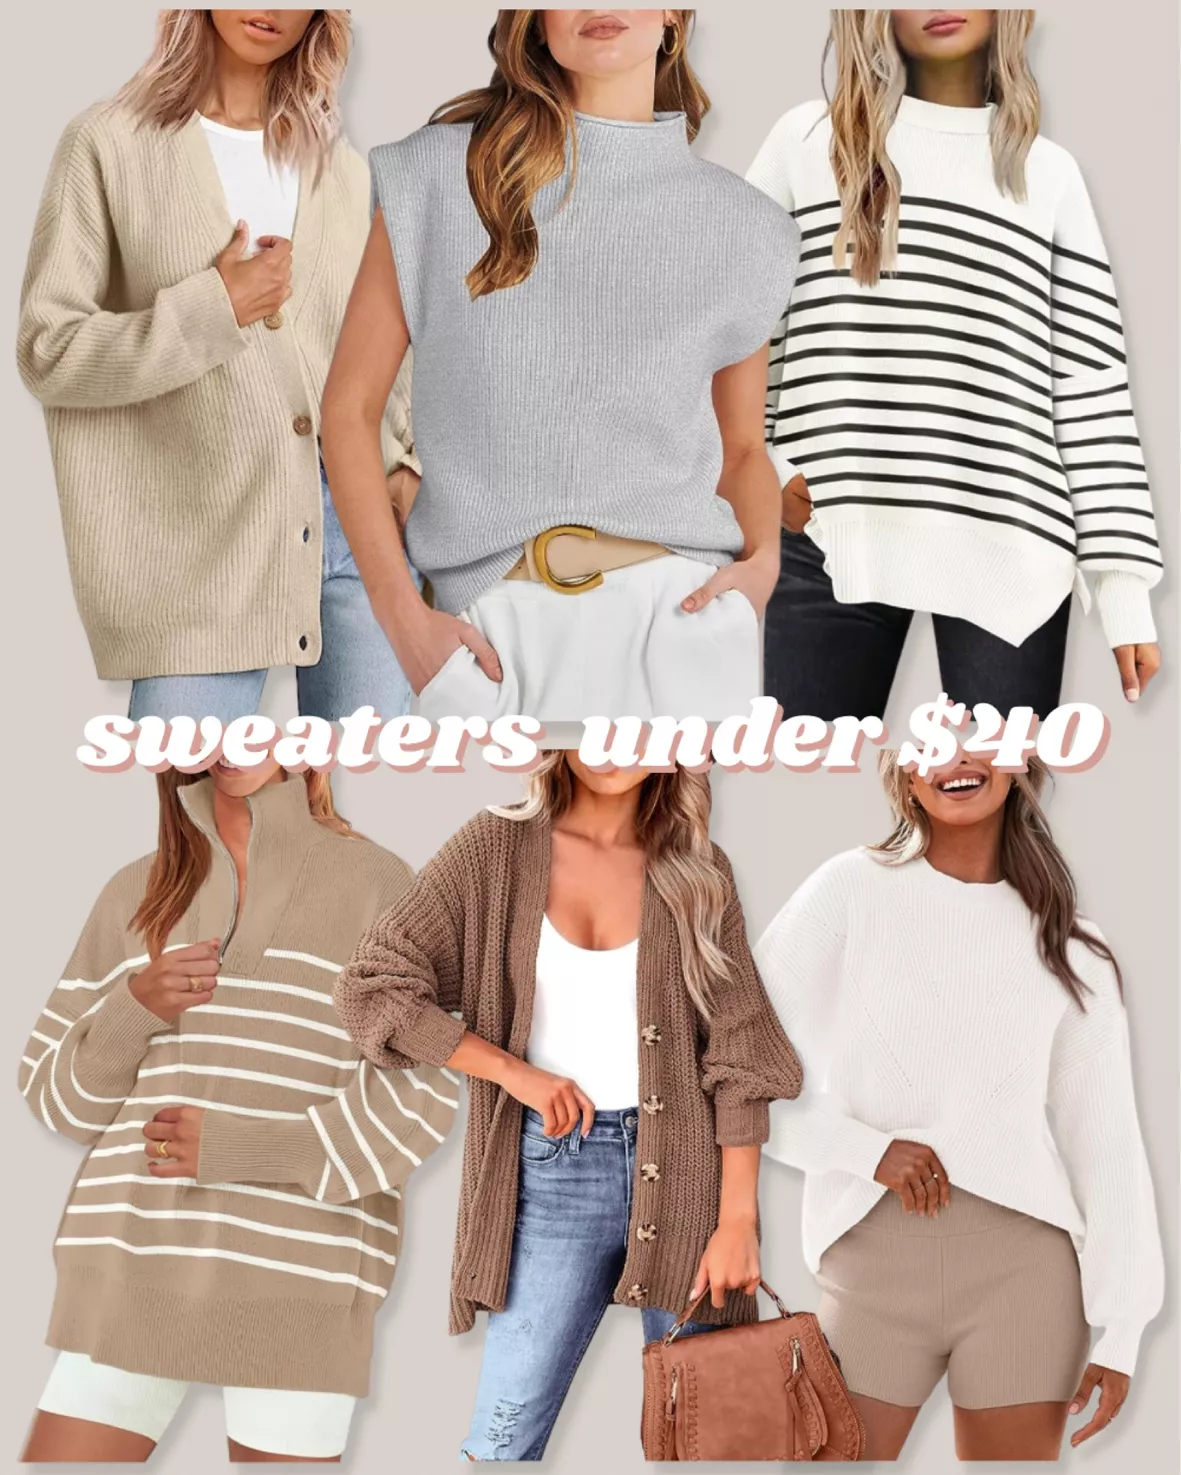 Oversized Half-zip Sweater - Beige/striped - Ladies